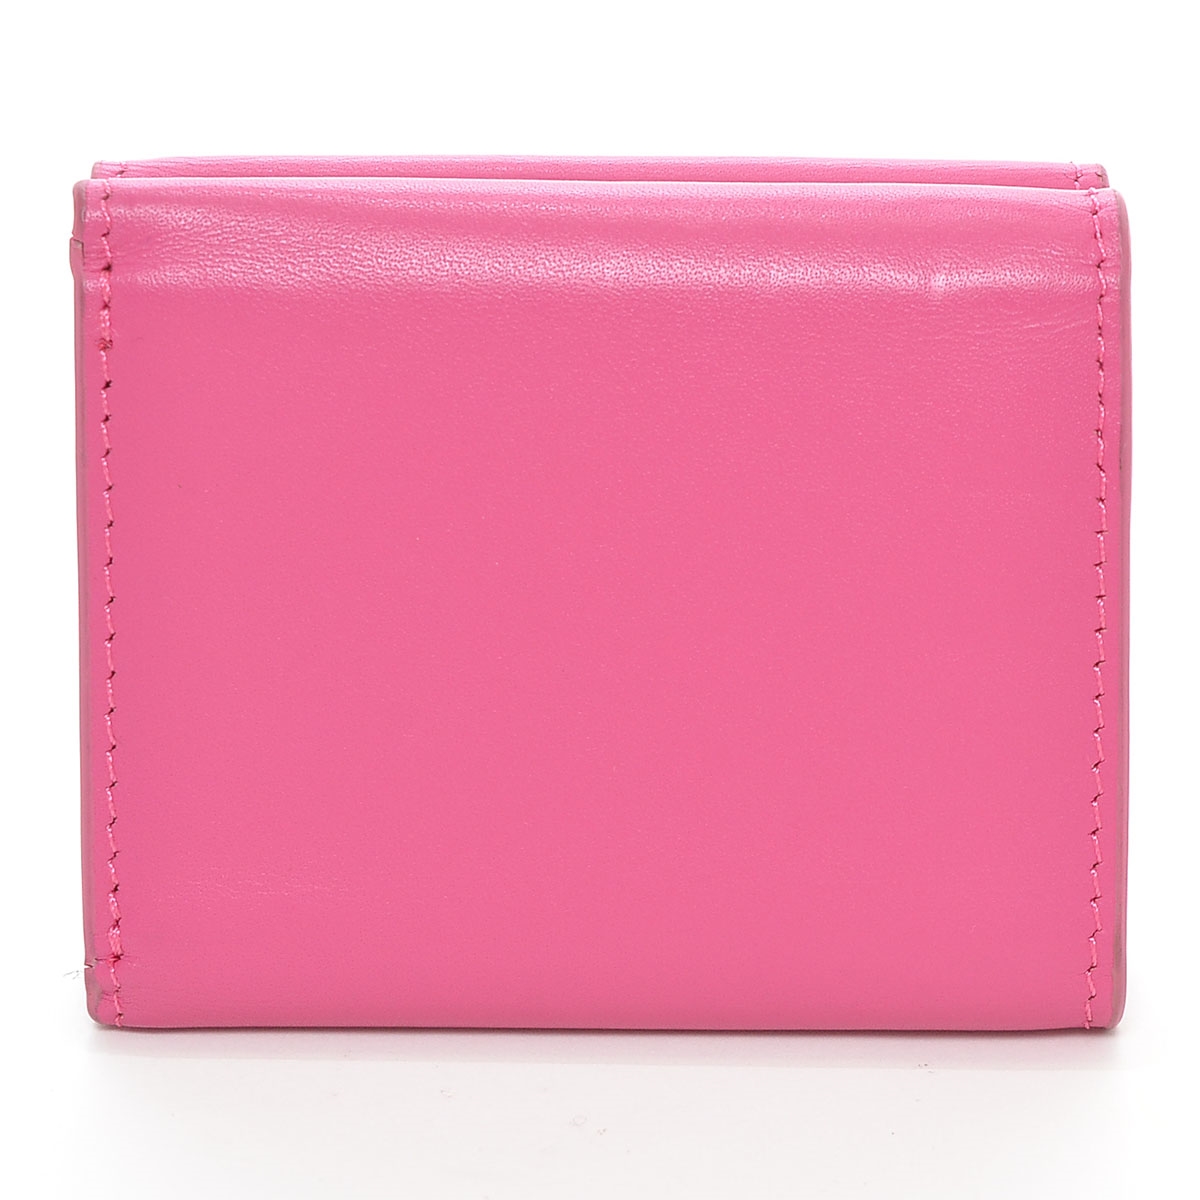 #329669 MOUSSY Moussy # compact кошелек бумажник три складывать кошелек кожа женский розовый 